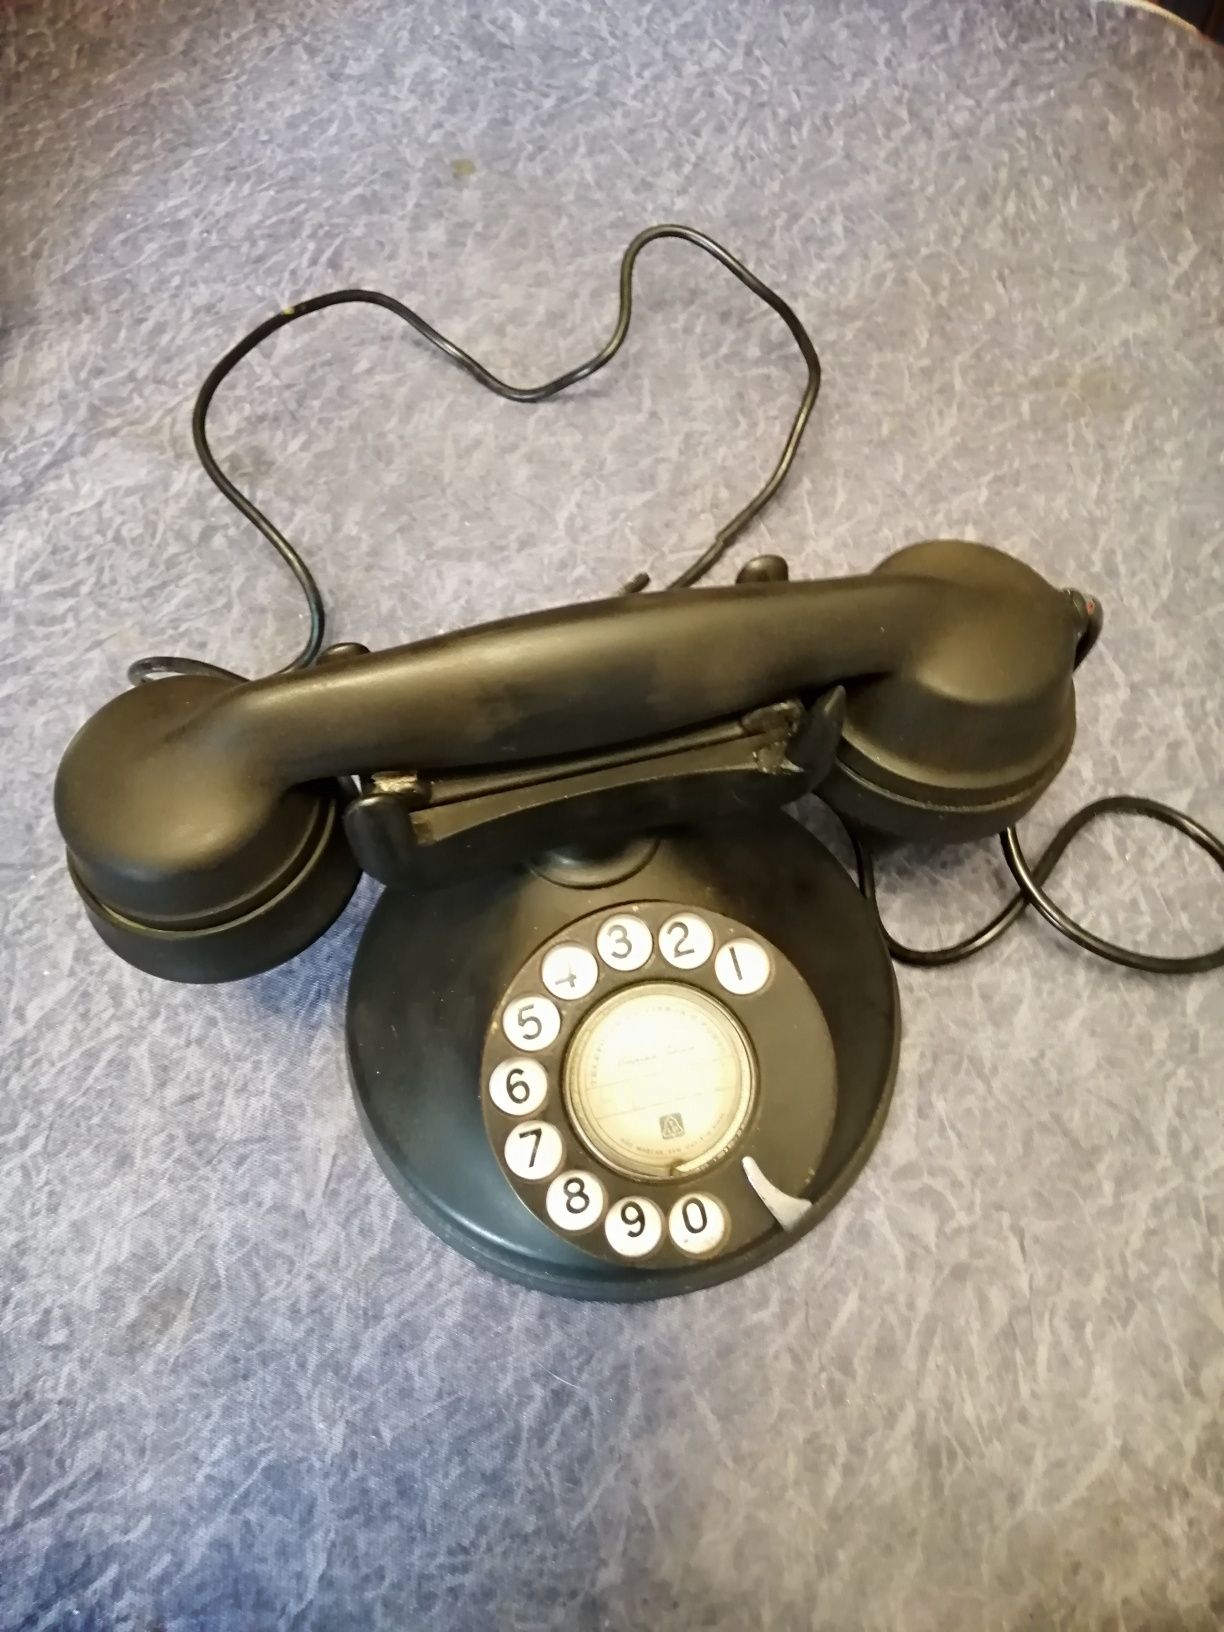 Telefone antigo, mais caixa campainhas